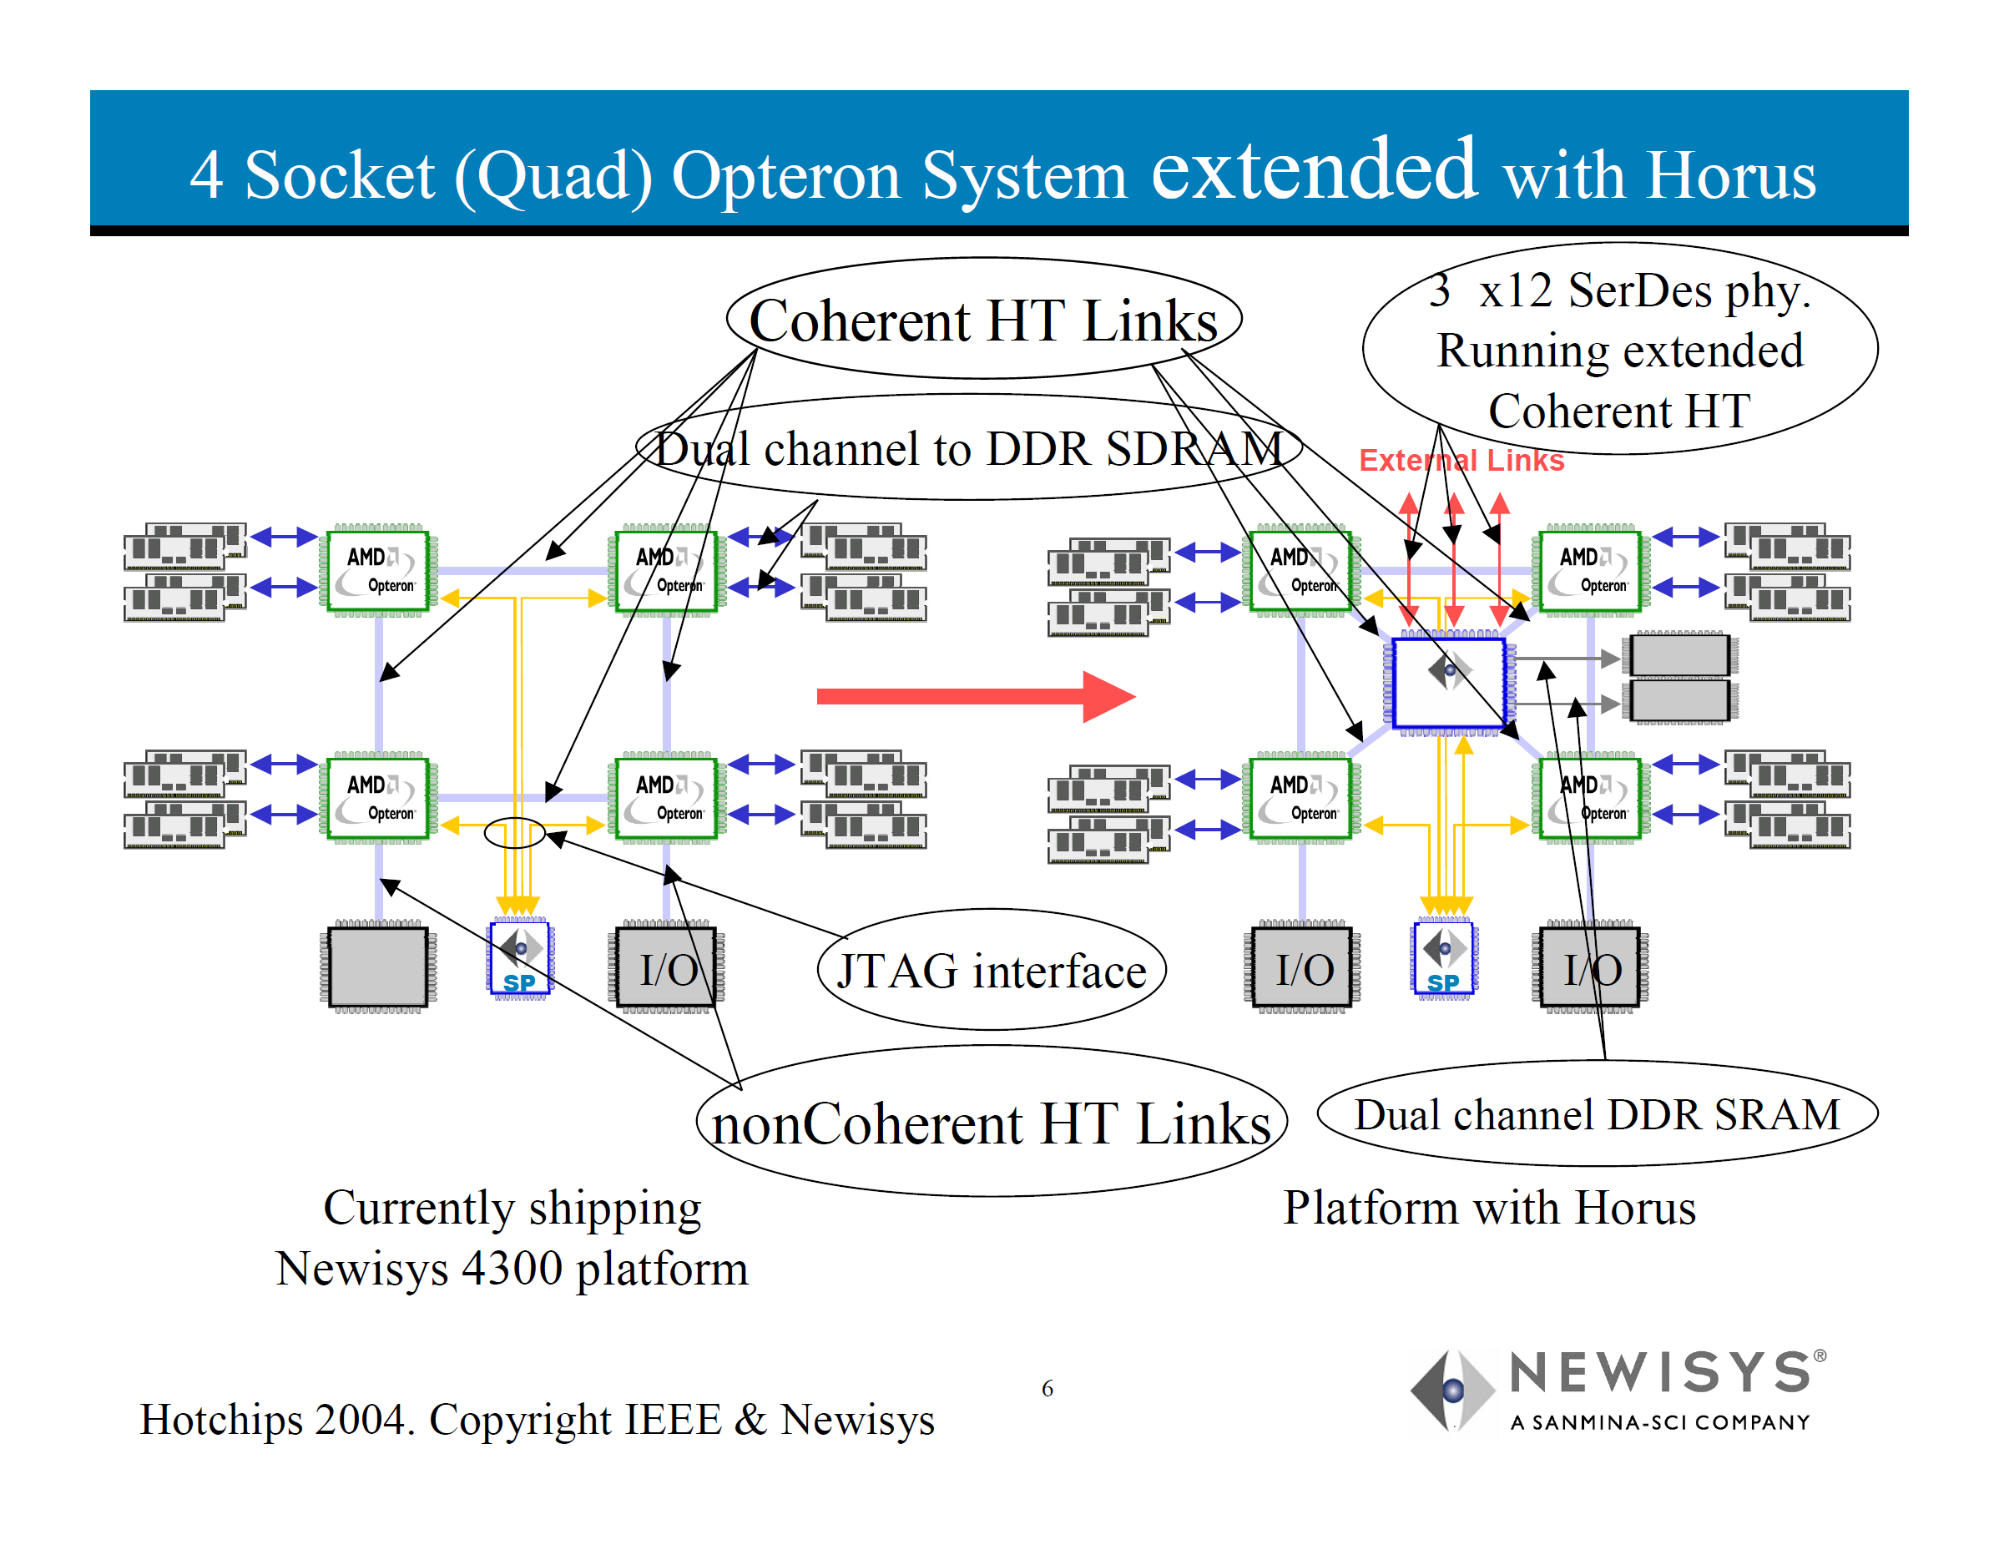 照片中提到了4 Socket (Quad) Opteron System extended with Horus、3 x12 SerDes phy.、Running extended，跟紐波特電視台有關，包含了圖、至強、英特爾、中央處理器、x86